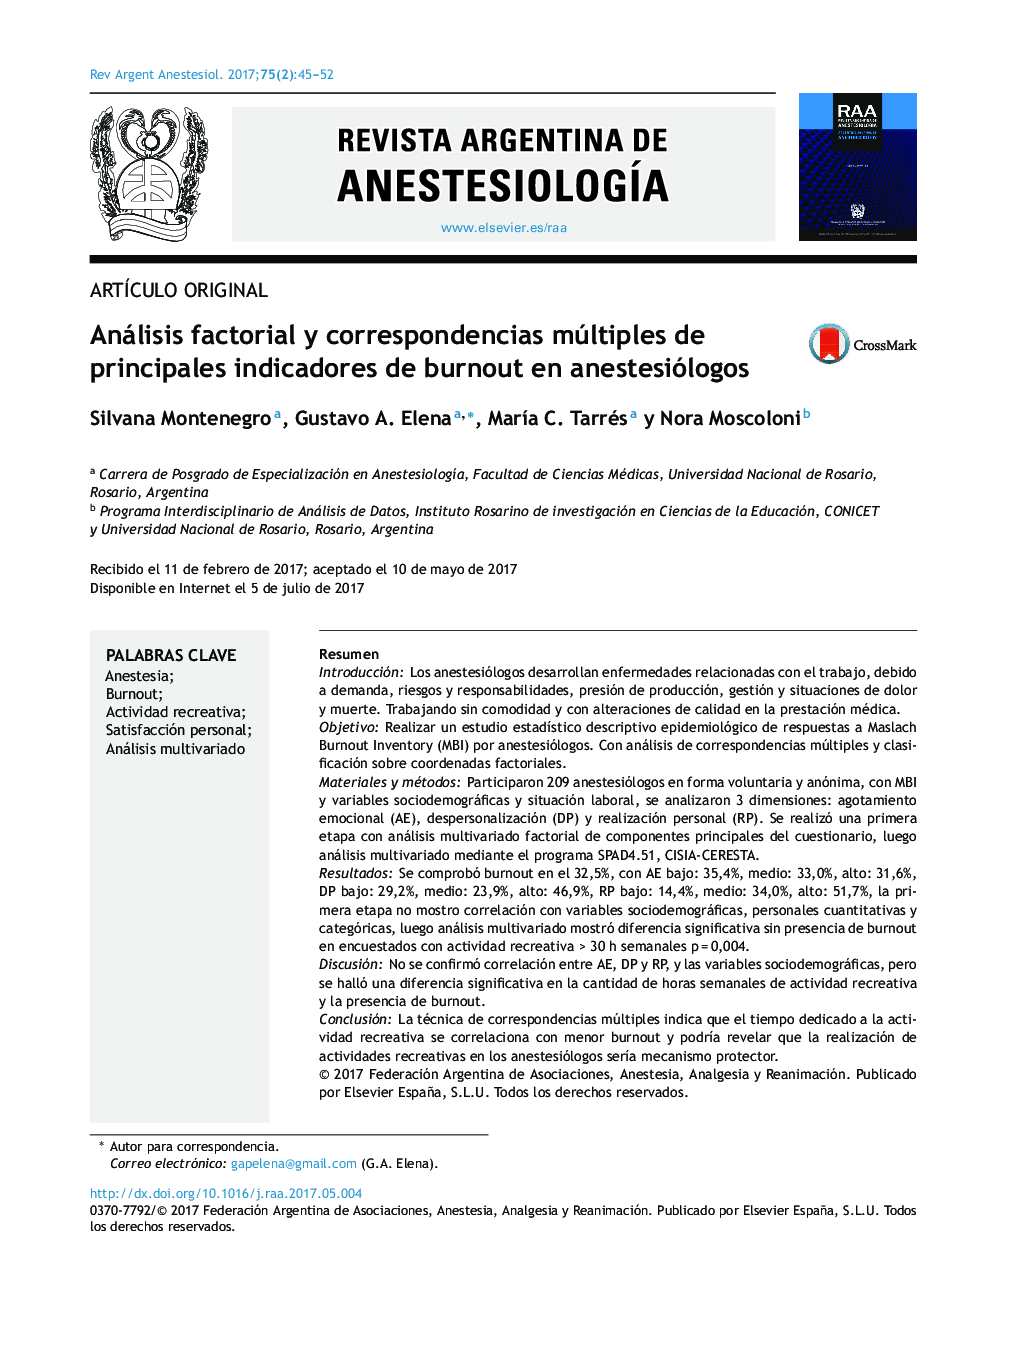 Análisis factorial y correspondencias múltiples de principales indicadores de burnout en anestesiólogos